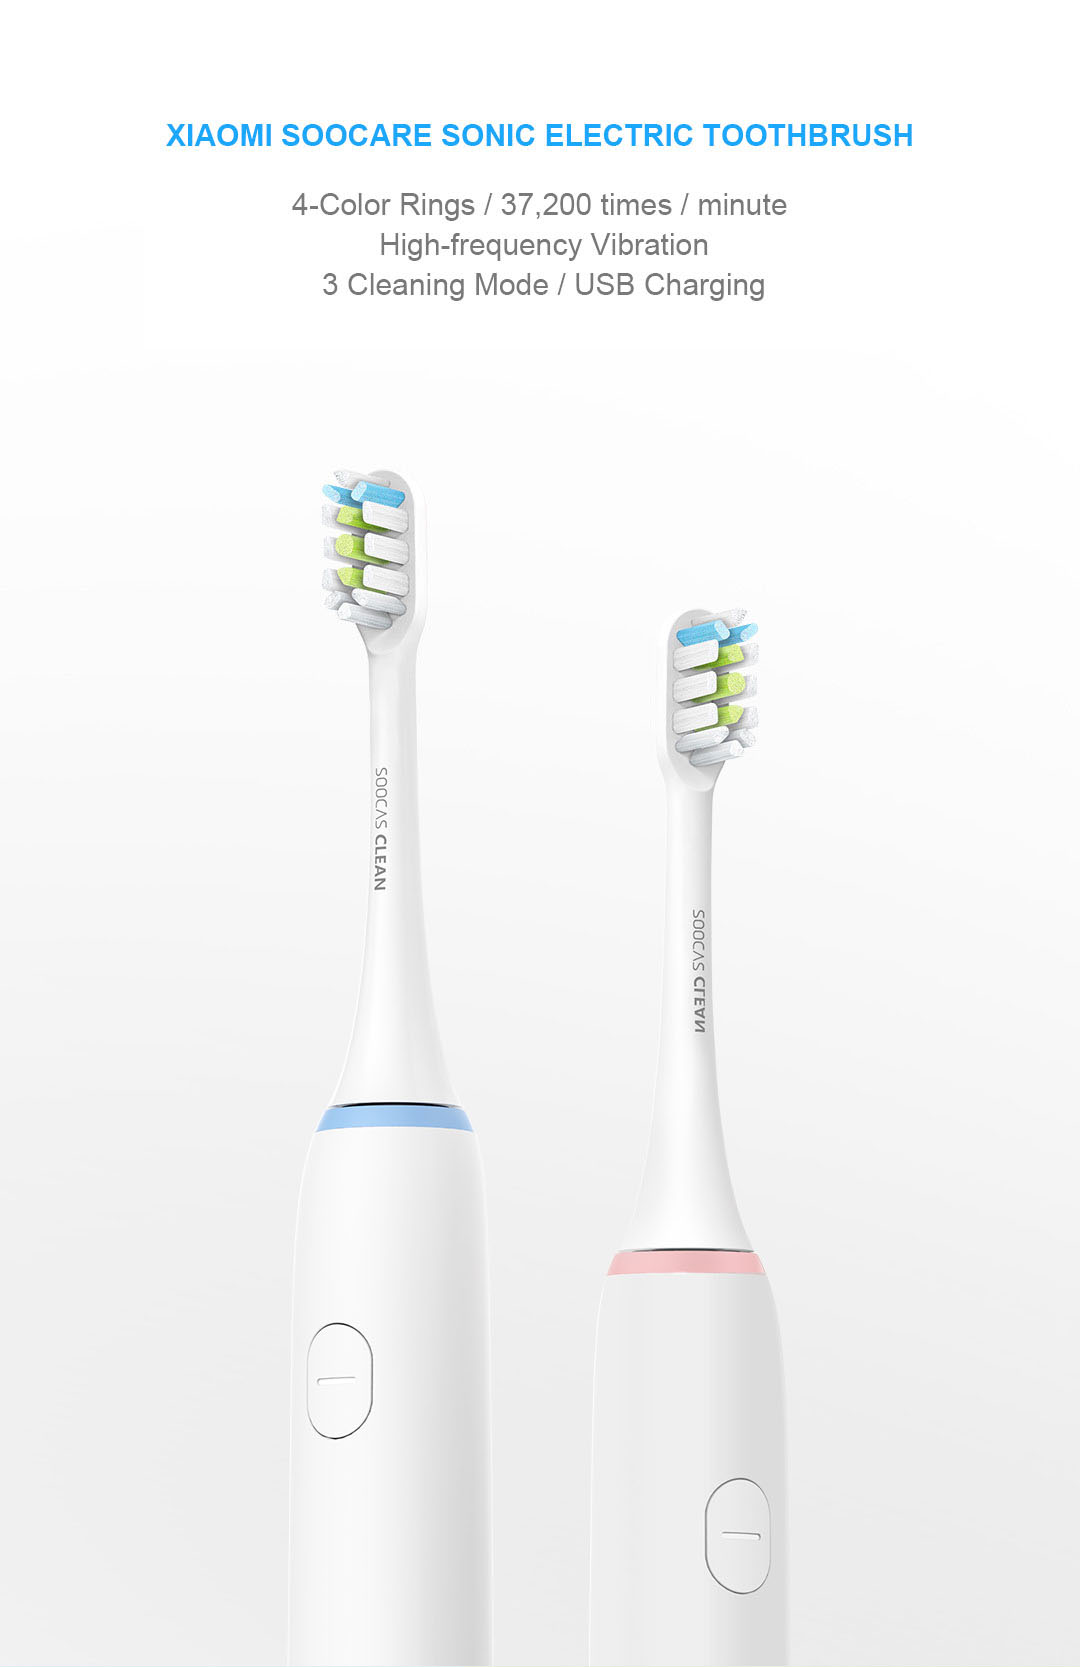 Купить щетку днс. Ксиоми зубная электрическая щетка. Зубная щетка Xiaomi soocas Green (v2). Зубная щетка Sonic x-3. Sonic Electric Toothbrush x1.